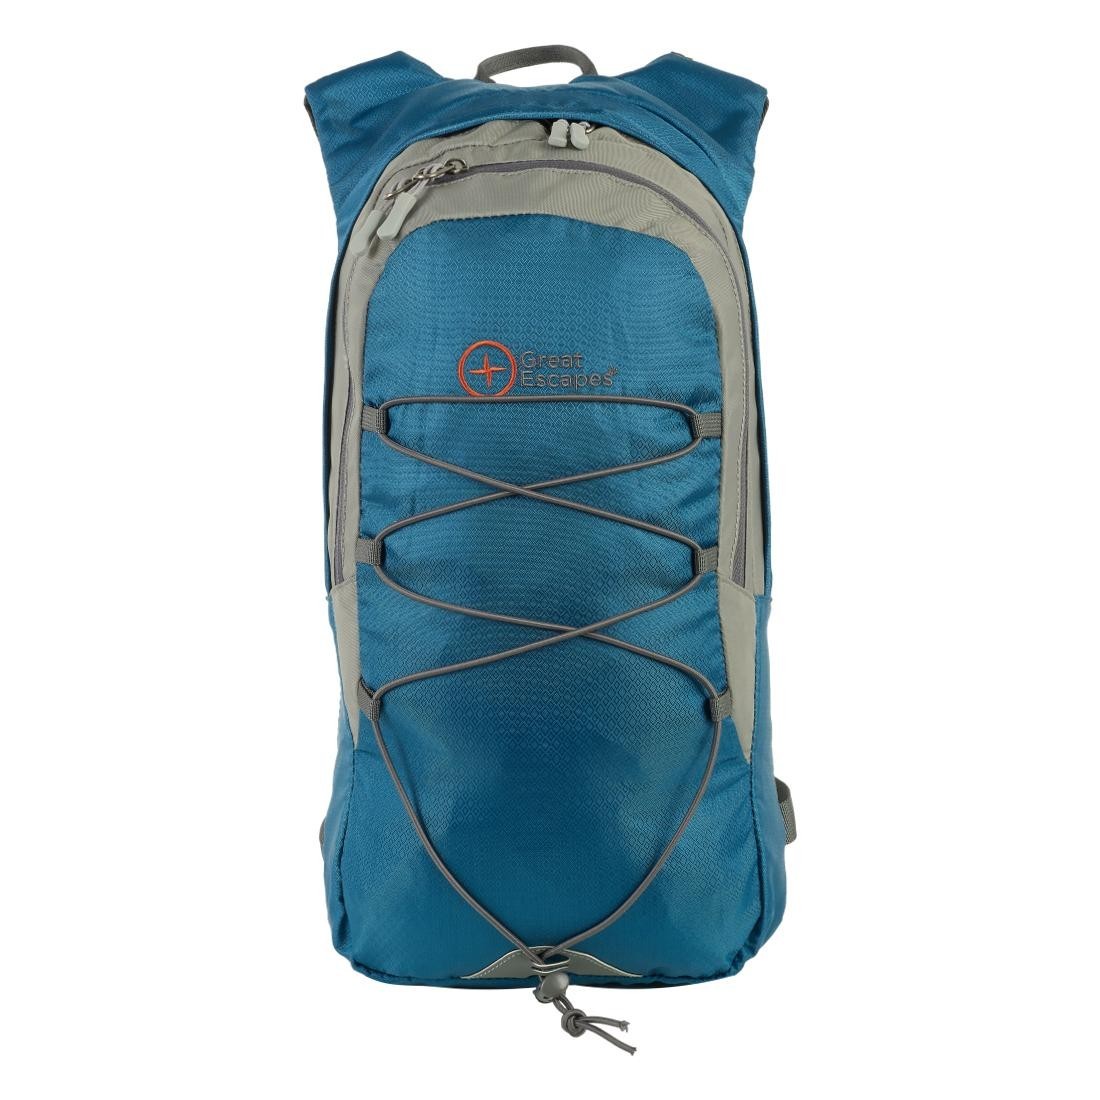 T. LIGHT 8 - Multipurpose backpack 8 liters